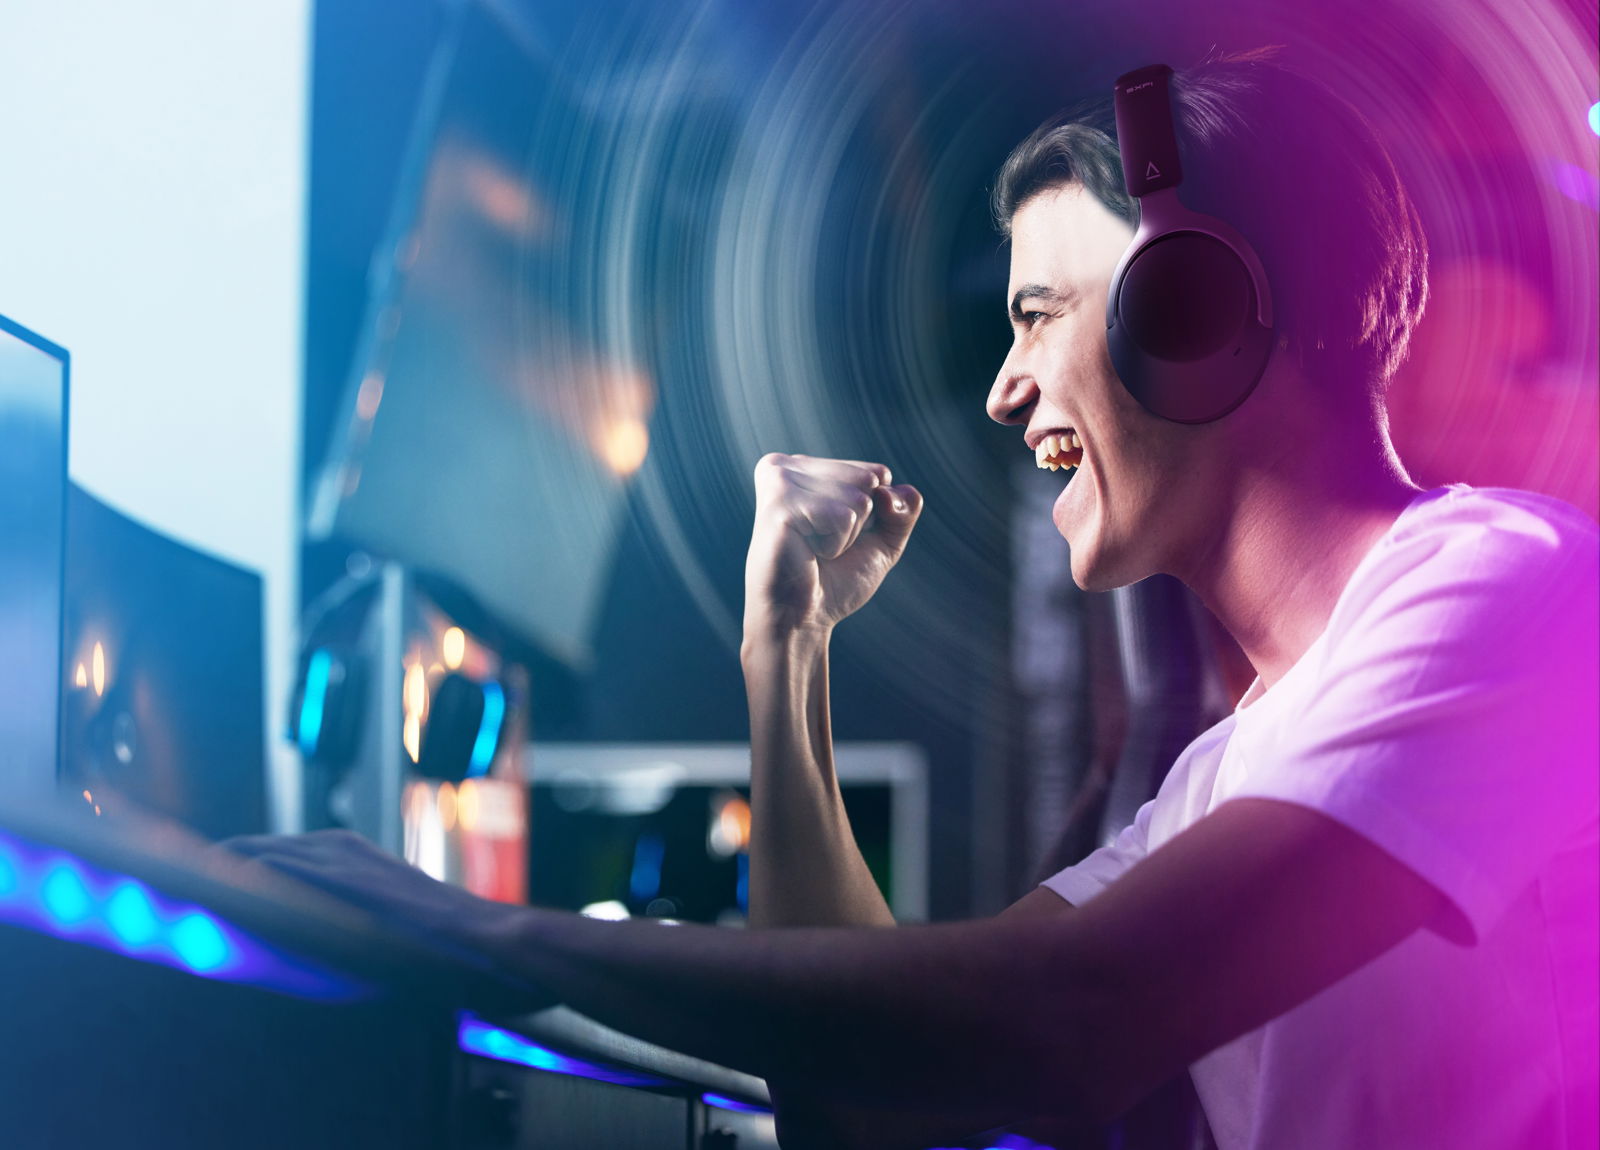 un hombre celebra con el puño en alto una victoria en un juego electrónico llevando unos auriculares zen hybrid  sfxi